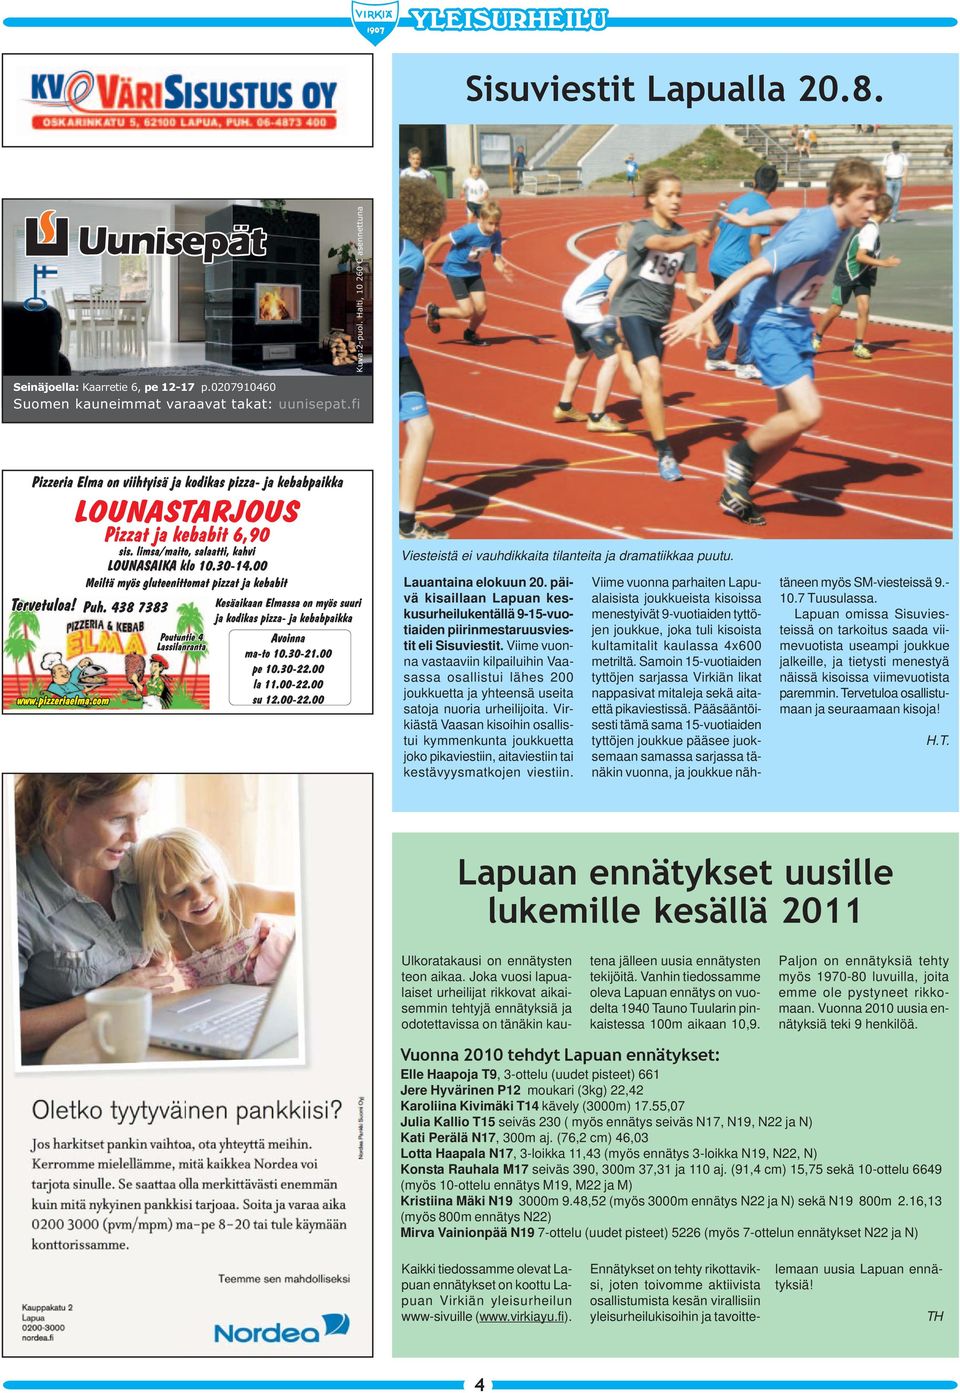 Viime vuonna vastaaviin kilpailuihin Vaasassa osallistui lähes 200 joukkuetta ja yhteensä useita satoja nuoria urheilijoita.